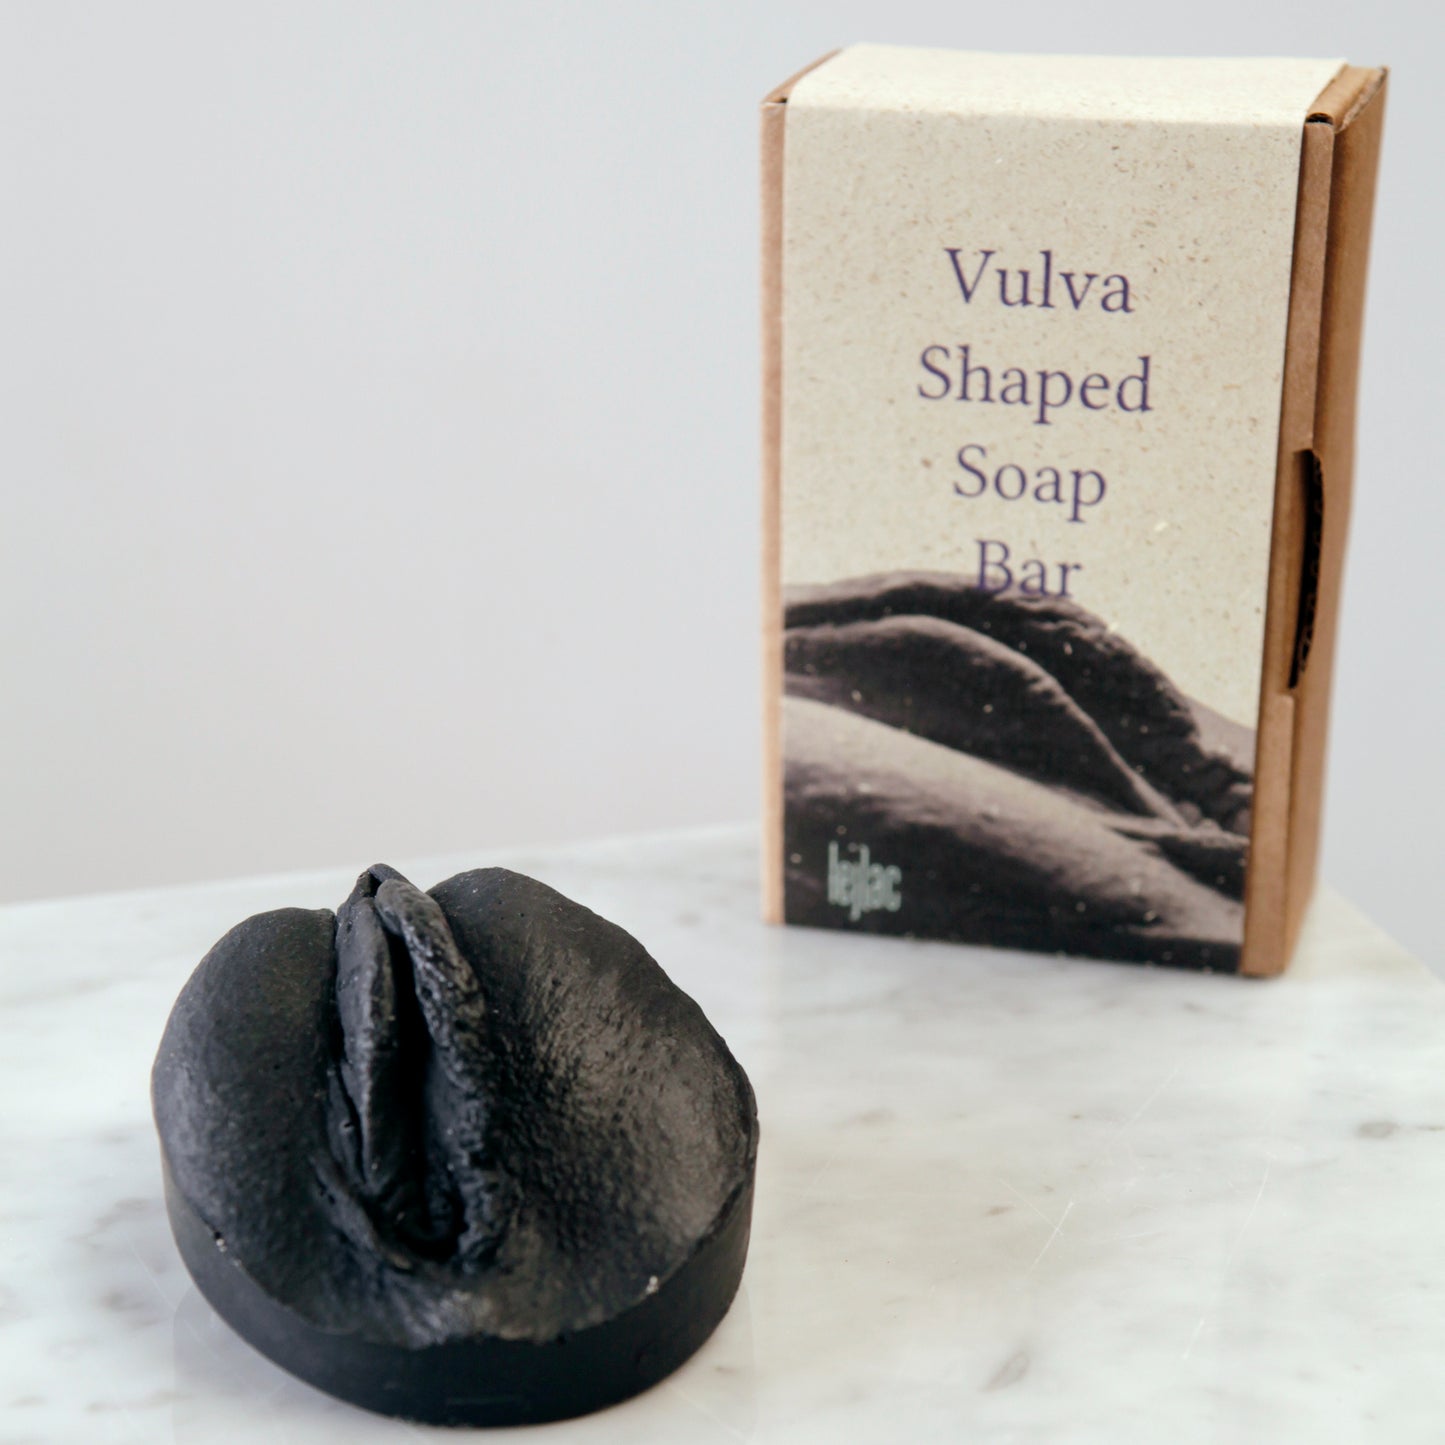 schwarze Seife in Vulvaform mit Kartonbox, so gut wie plastikfrei!